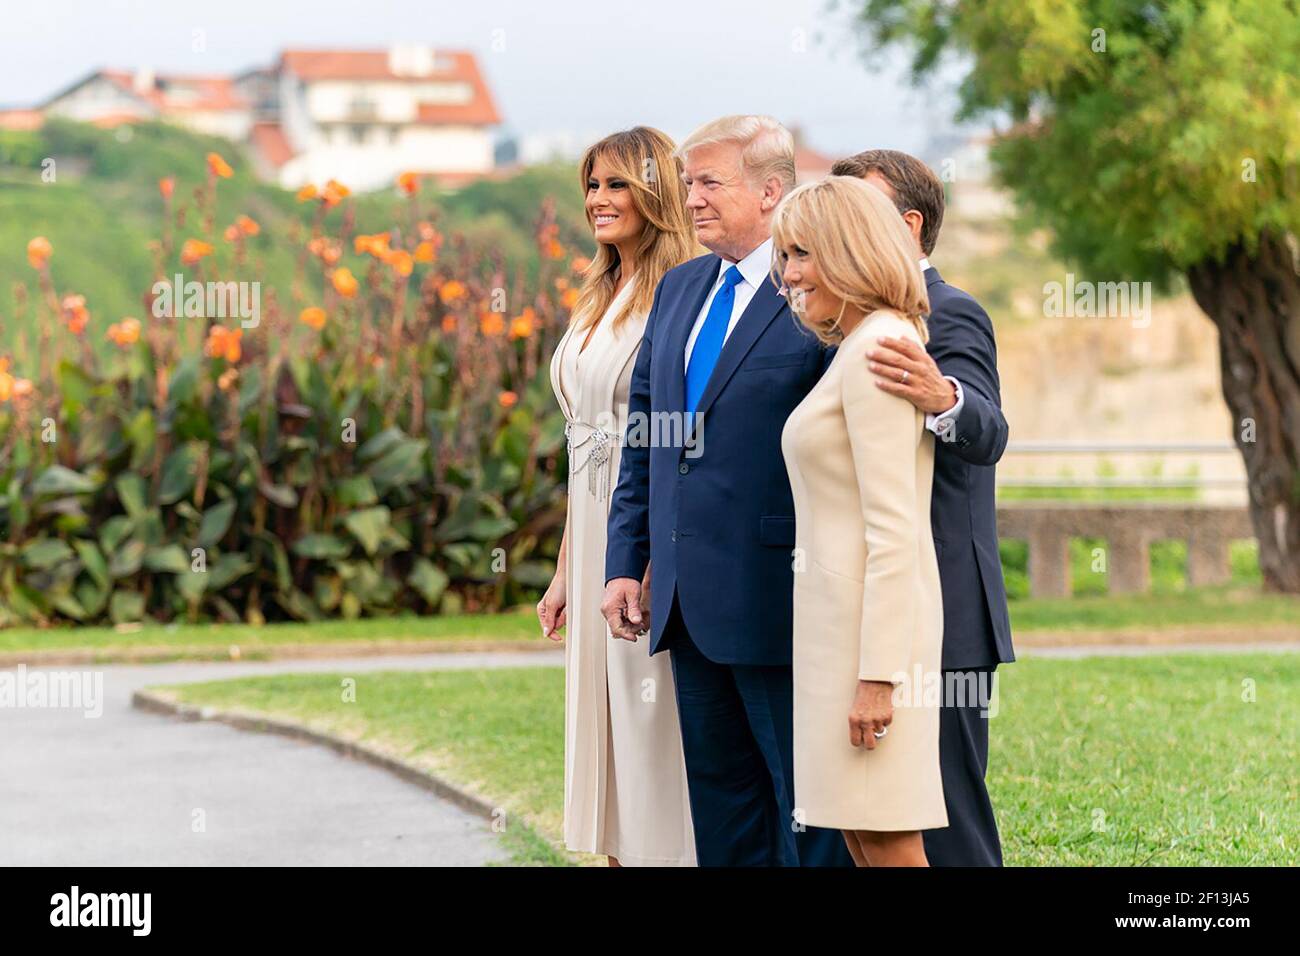 Le président Donald Trump et la première dame Melania Trump arrivent au dîner de travail des dirigeants du G7 et sont accueillis par le président français Emmanuel Macron et sa femme Mme Brigitte Macron le samedi 24 2019 août au Phare de Biarritz, en France. Banque D'Images